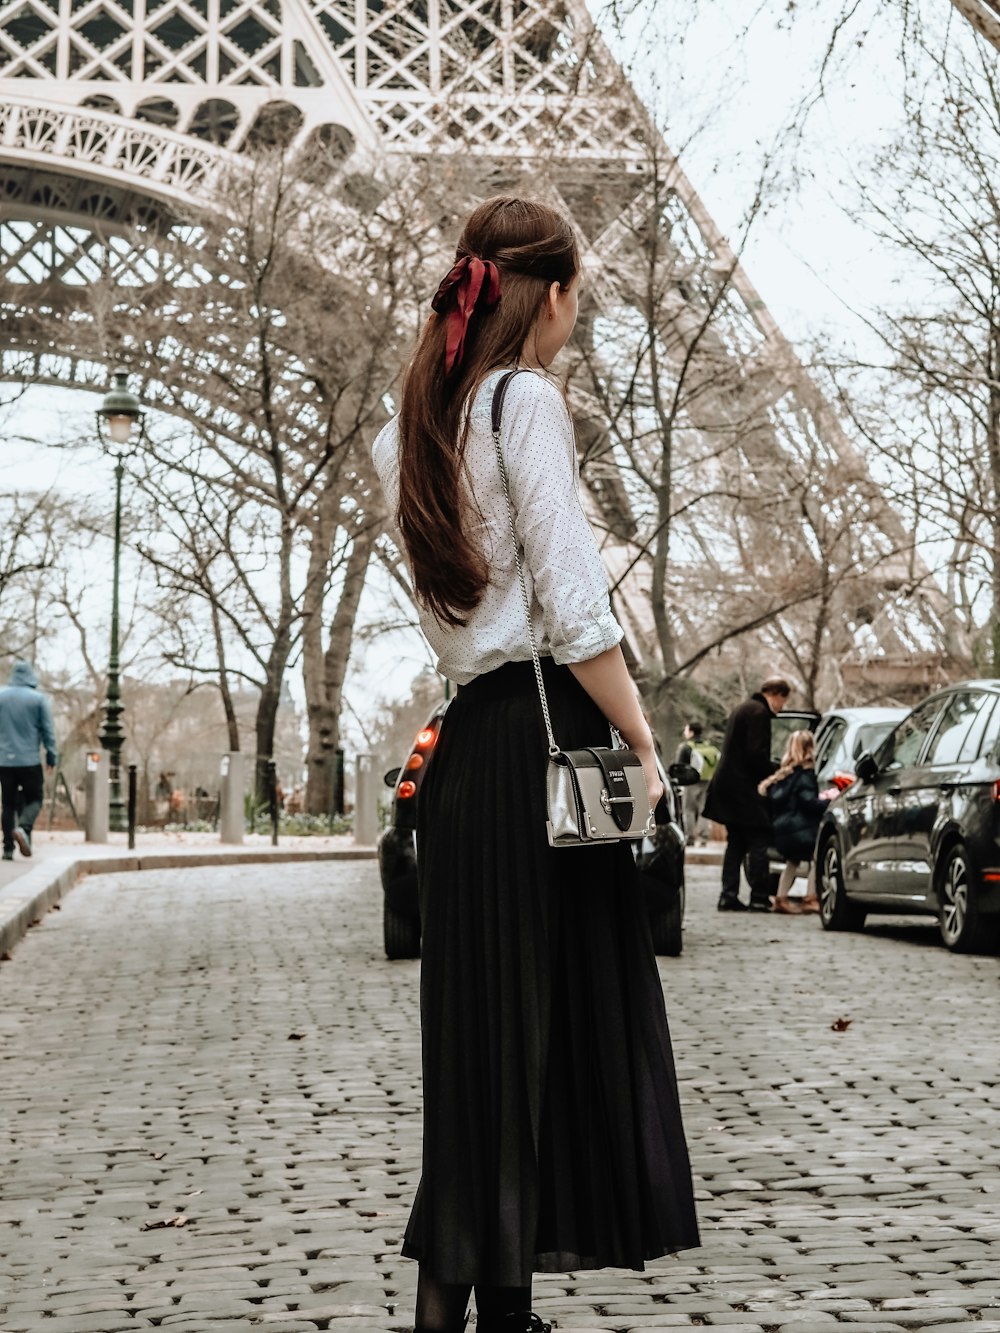 femme en robe blanche et noire debout sur le trottoir pendant la journée